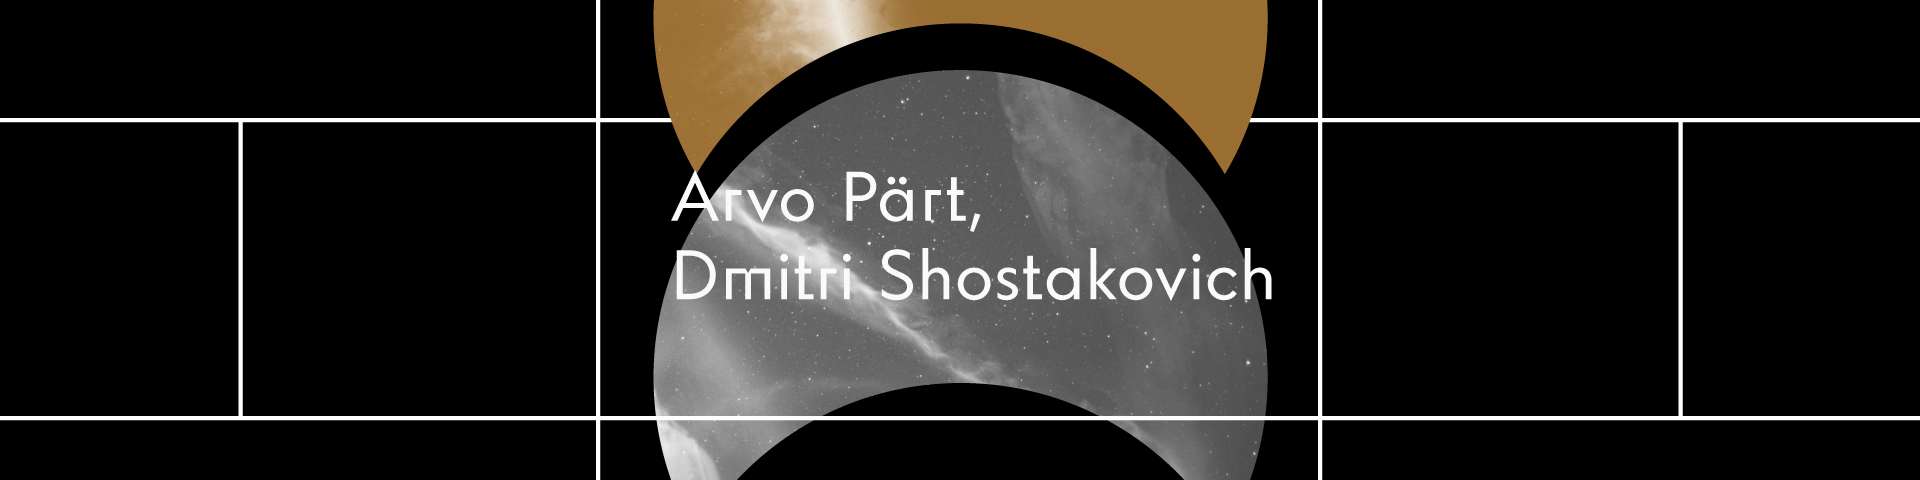 Symphony No. 14 (op. 135) by Dmitri Shostakovich